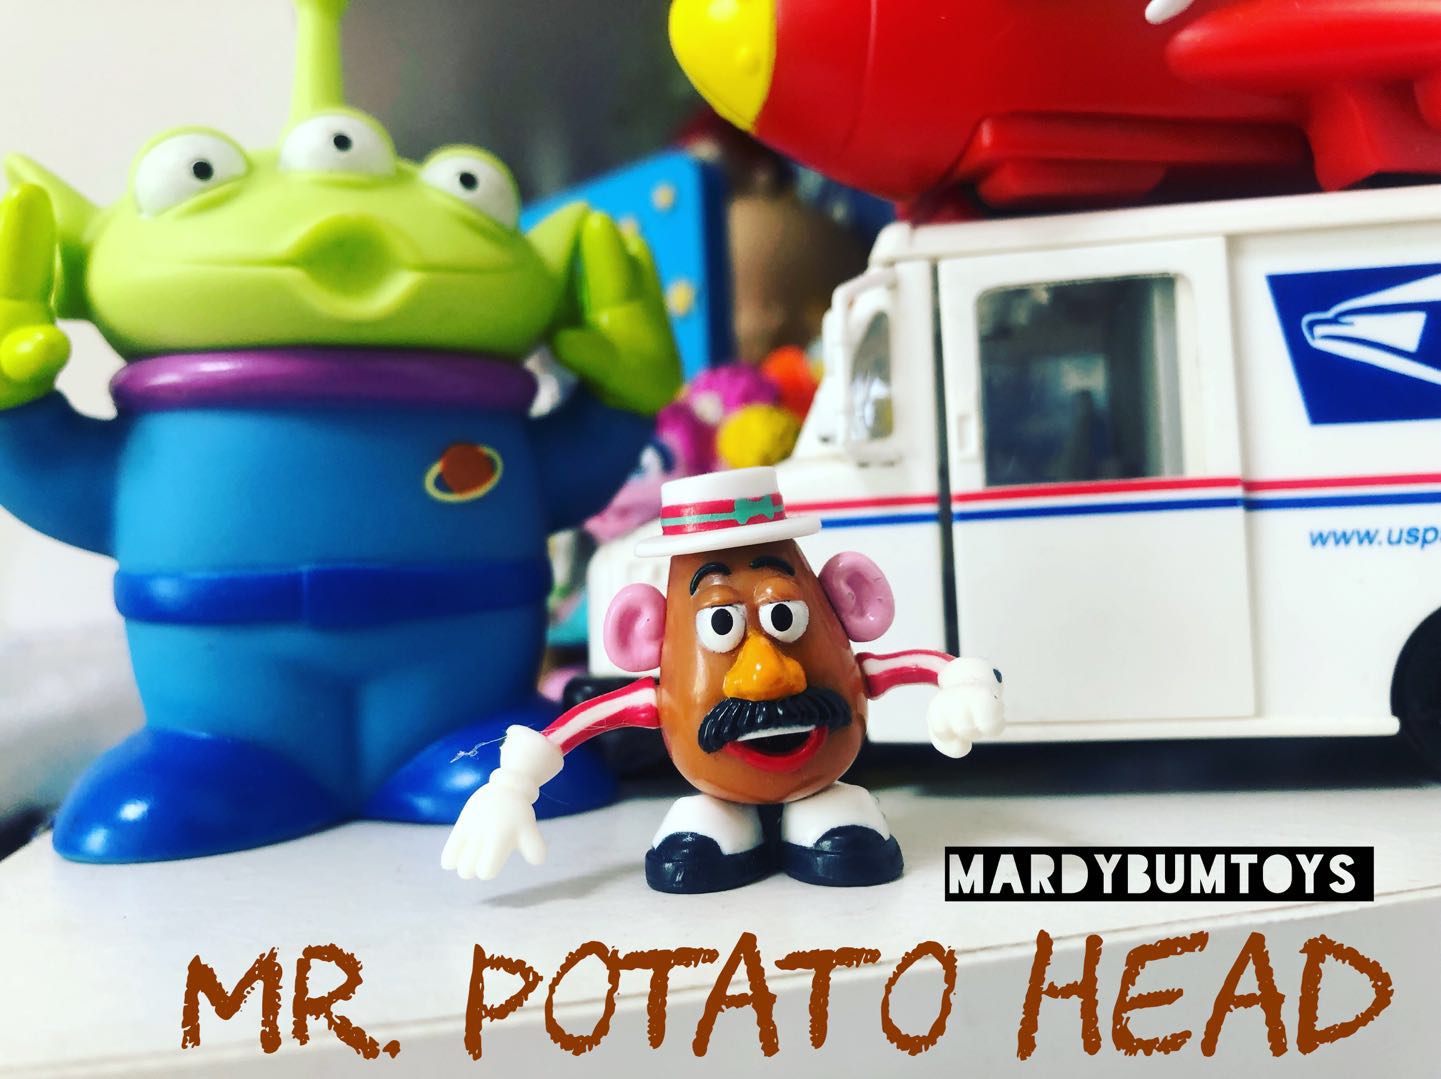 2013 稀有玩具总动员 土豆先生 mr. potato head 迷你拼装公仔